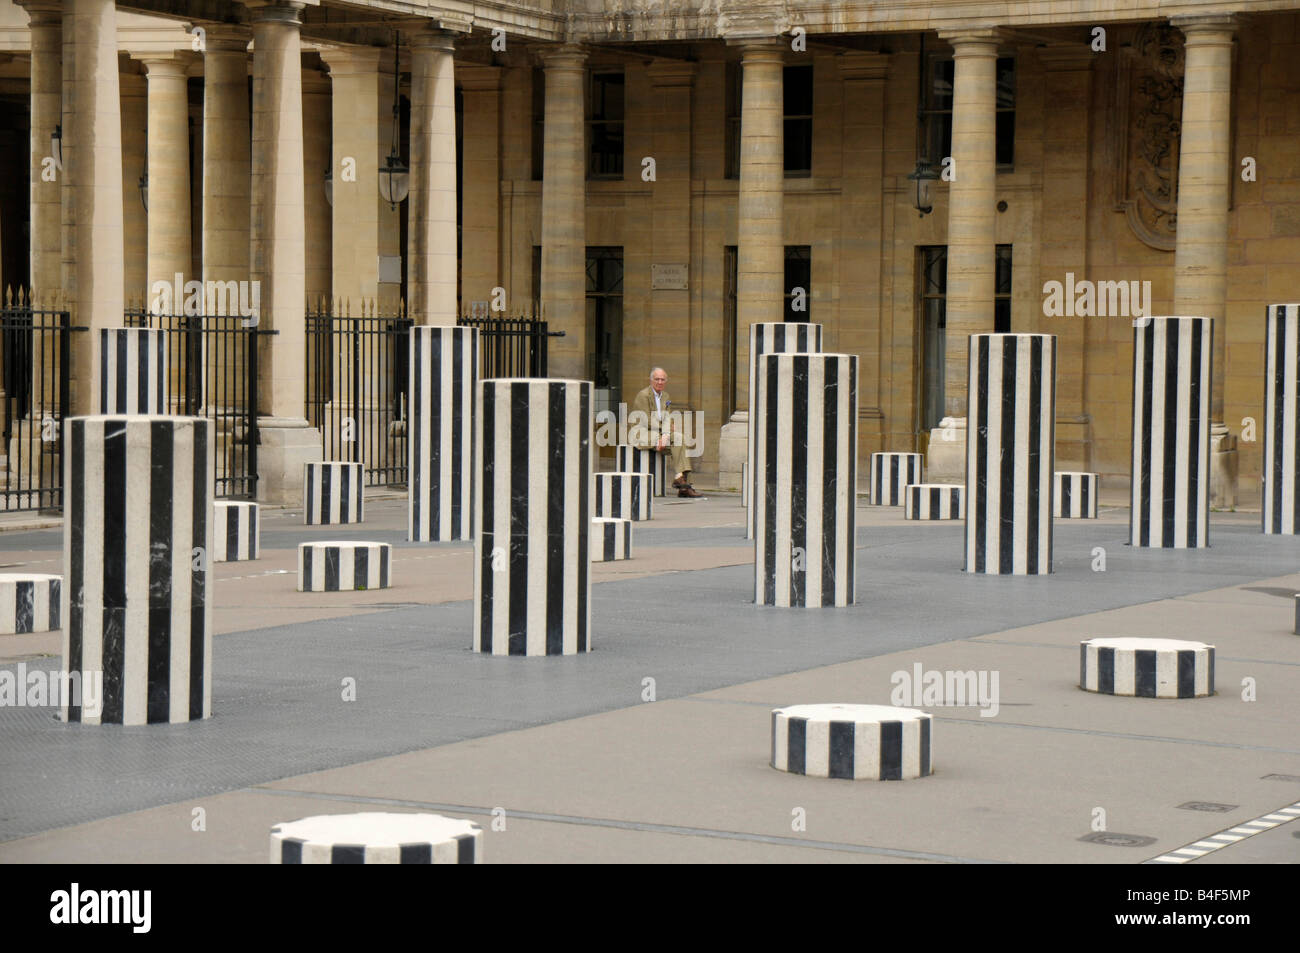 column art at Palais Royal in Paris France Stock Photo